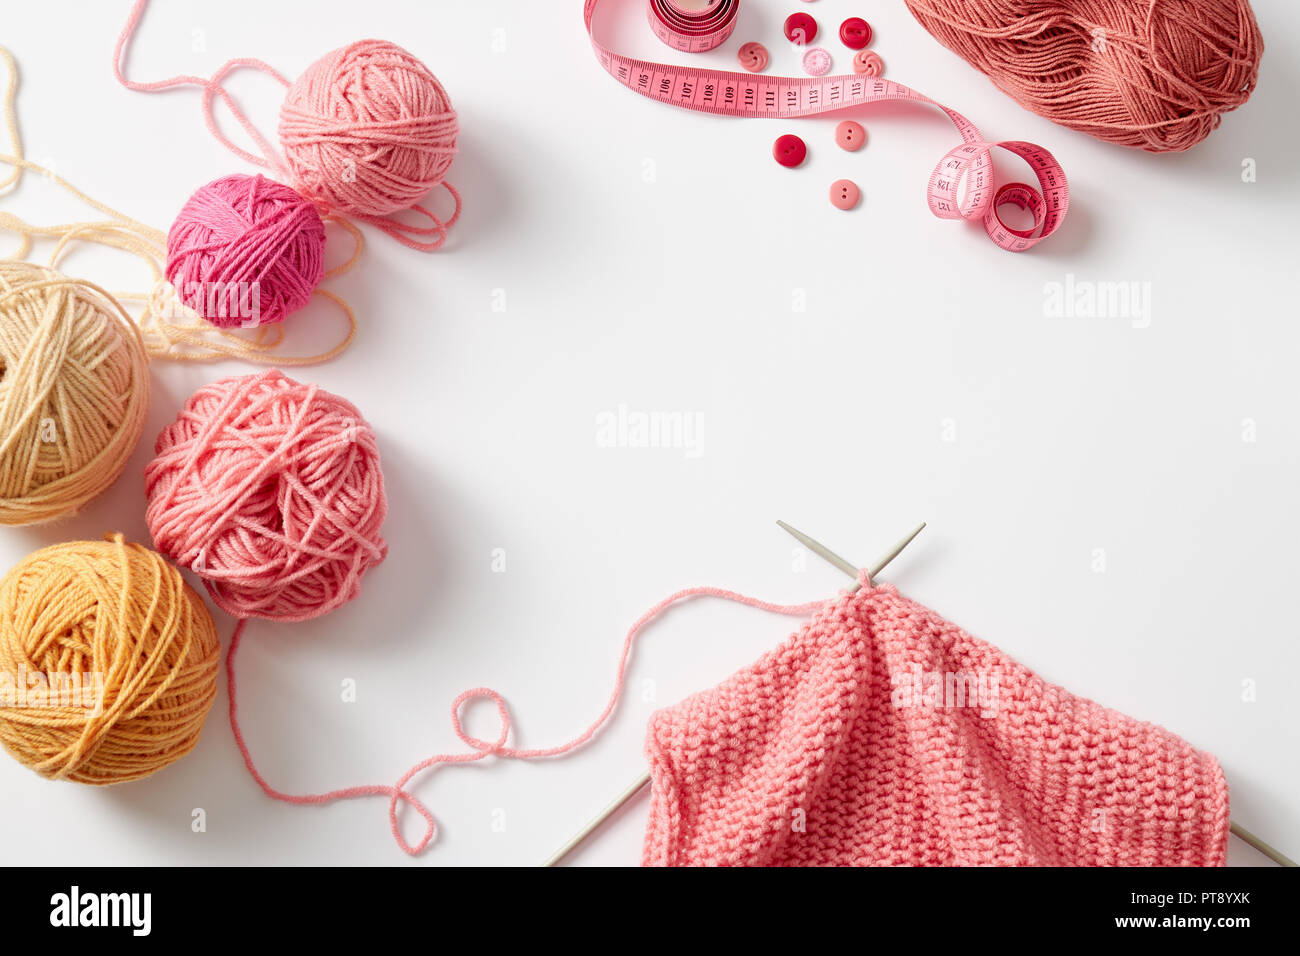 Projet de tricot en cours. Un morceau de pelote de laine à tricoter avec des aiguilles à tricoter et un. Banque D'Images